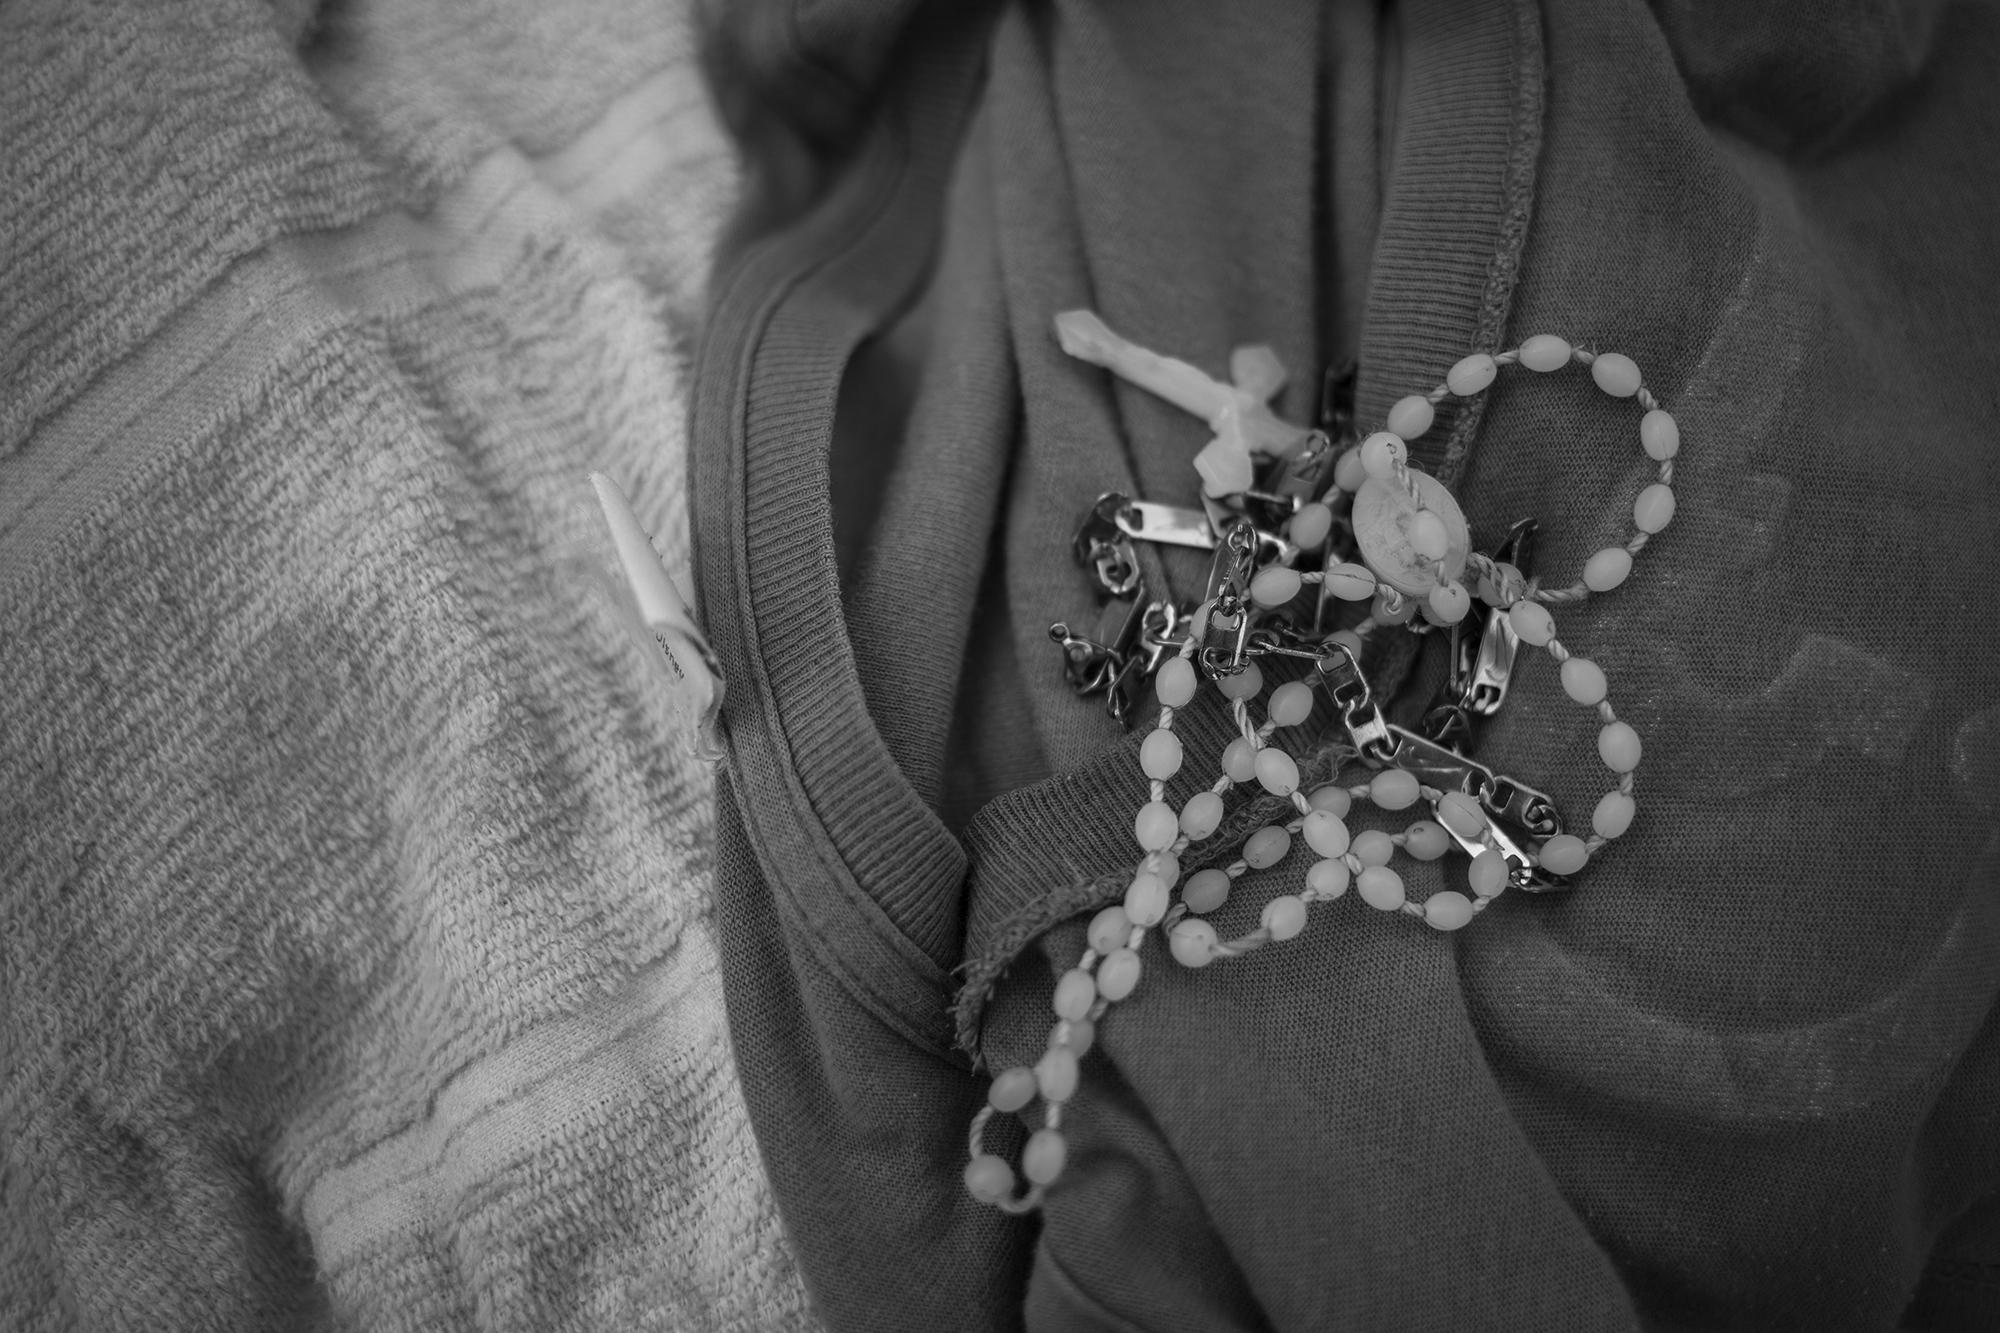 En su cuello carga dos amuletos: una cadena metálica y su camándula de plástico blanco. Cuida esas pertenencias como si fueran objetos de valor. 